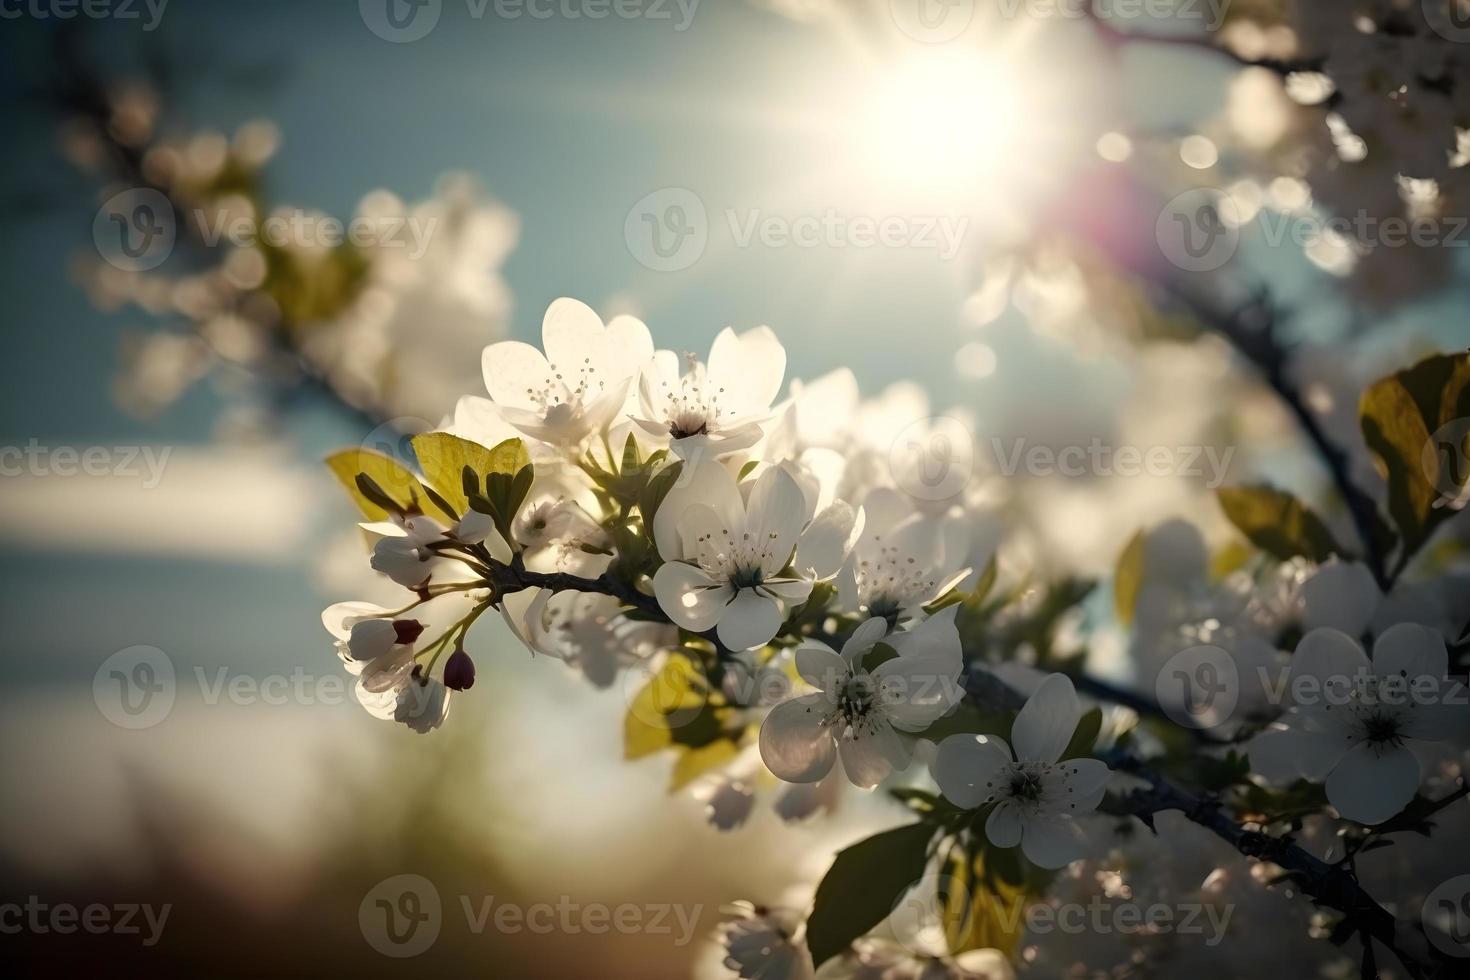 fotografie primavera fioritura - bianca fiori e luce del sole nel il cielo, fotografia